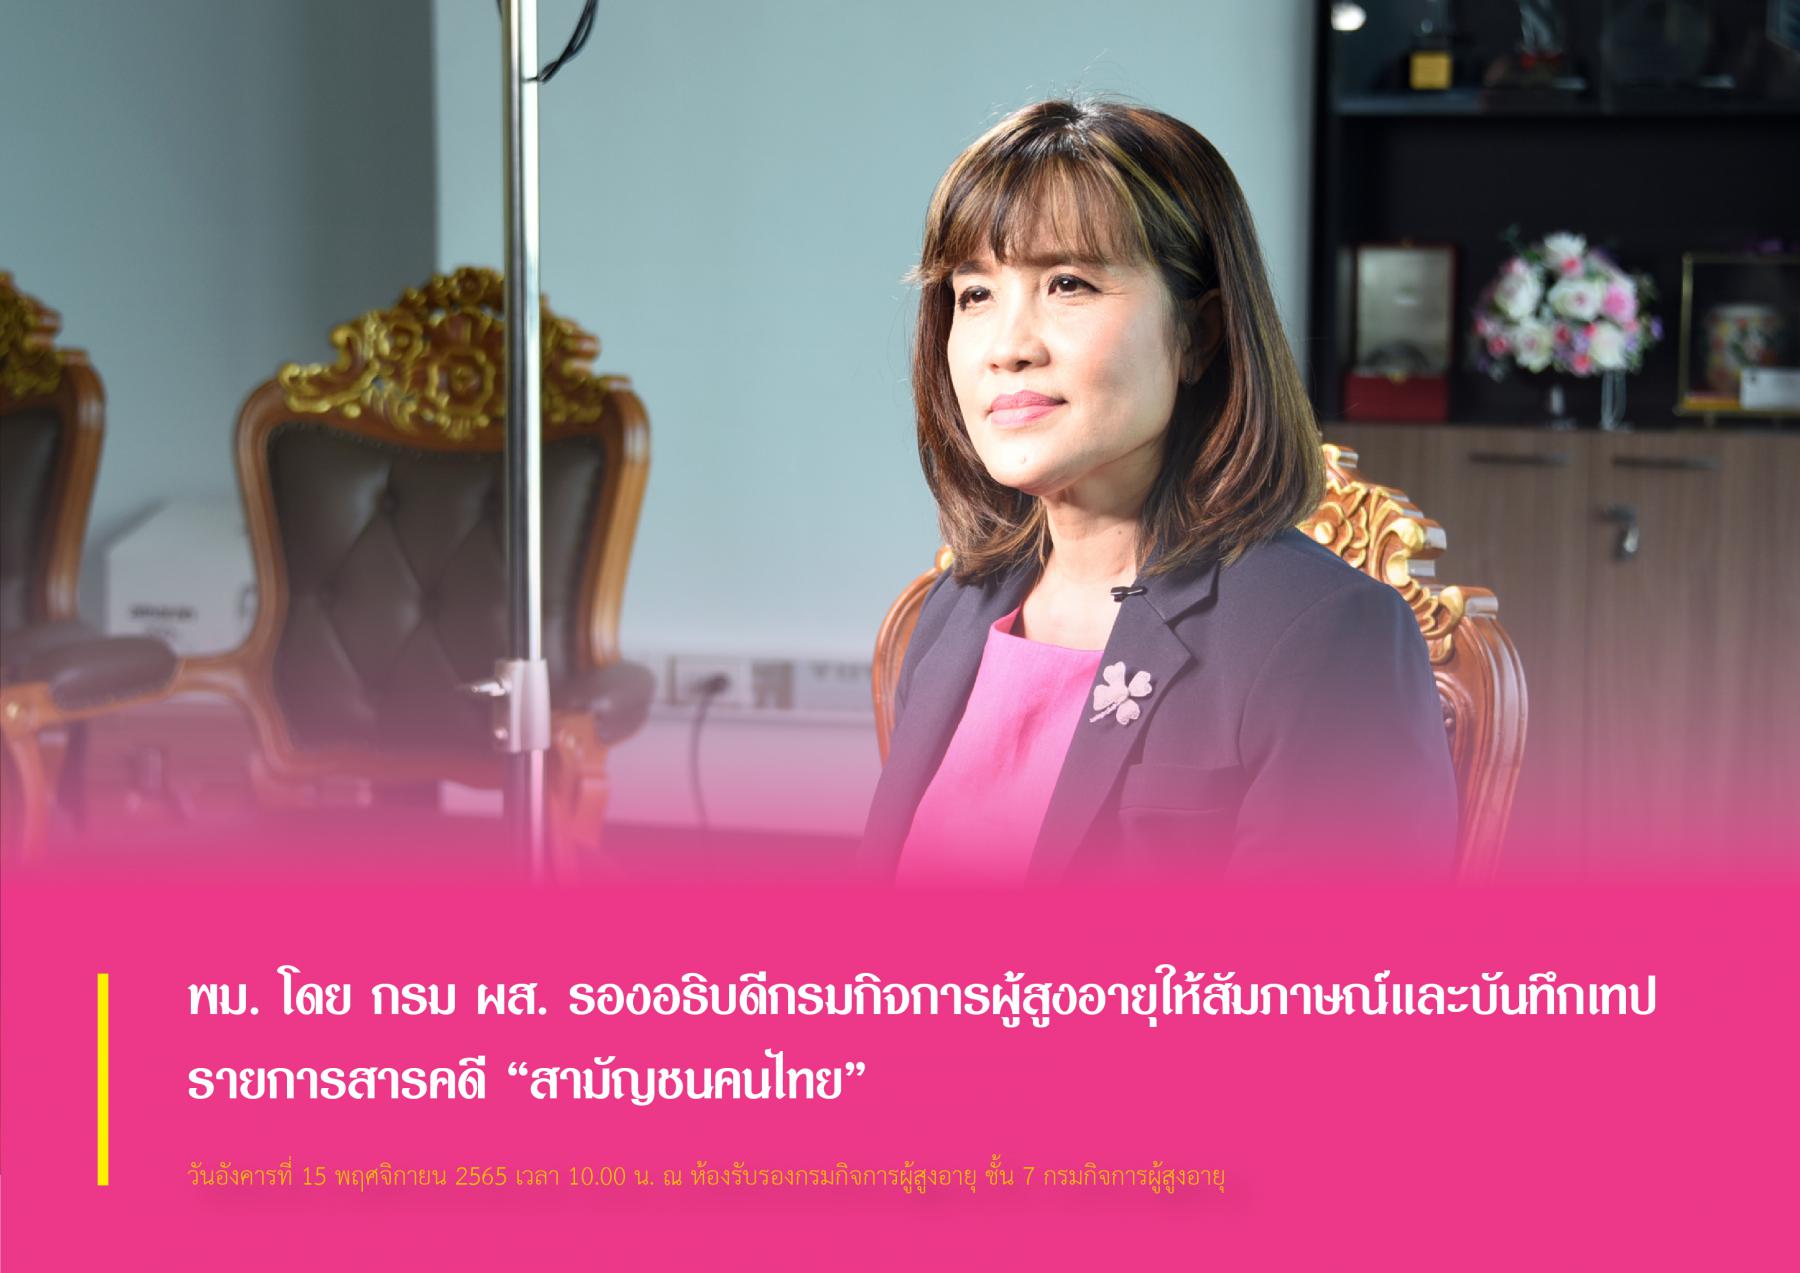 พม. โดย กรม ผส. รองอธิบดีกรมกิจการผู้สูงอายุให้สัมภาษณ์และบันทึกเทป รายการสารคดี “สามัญชนคนไทย”